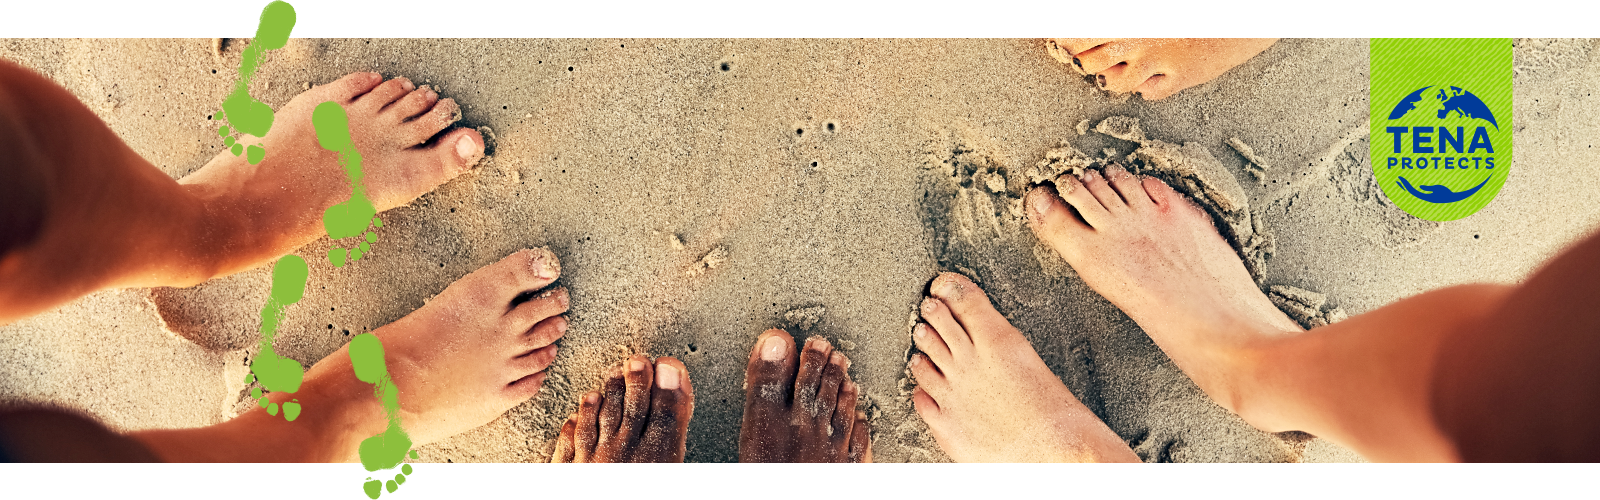 Close-up van blote voeten in het zand samen met een cartoonafbeelding van groene voetafdrukken en het TENA Protects-logo